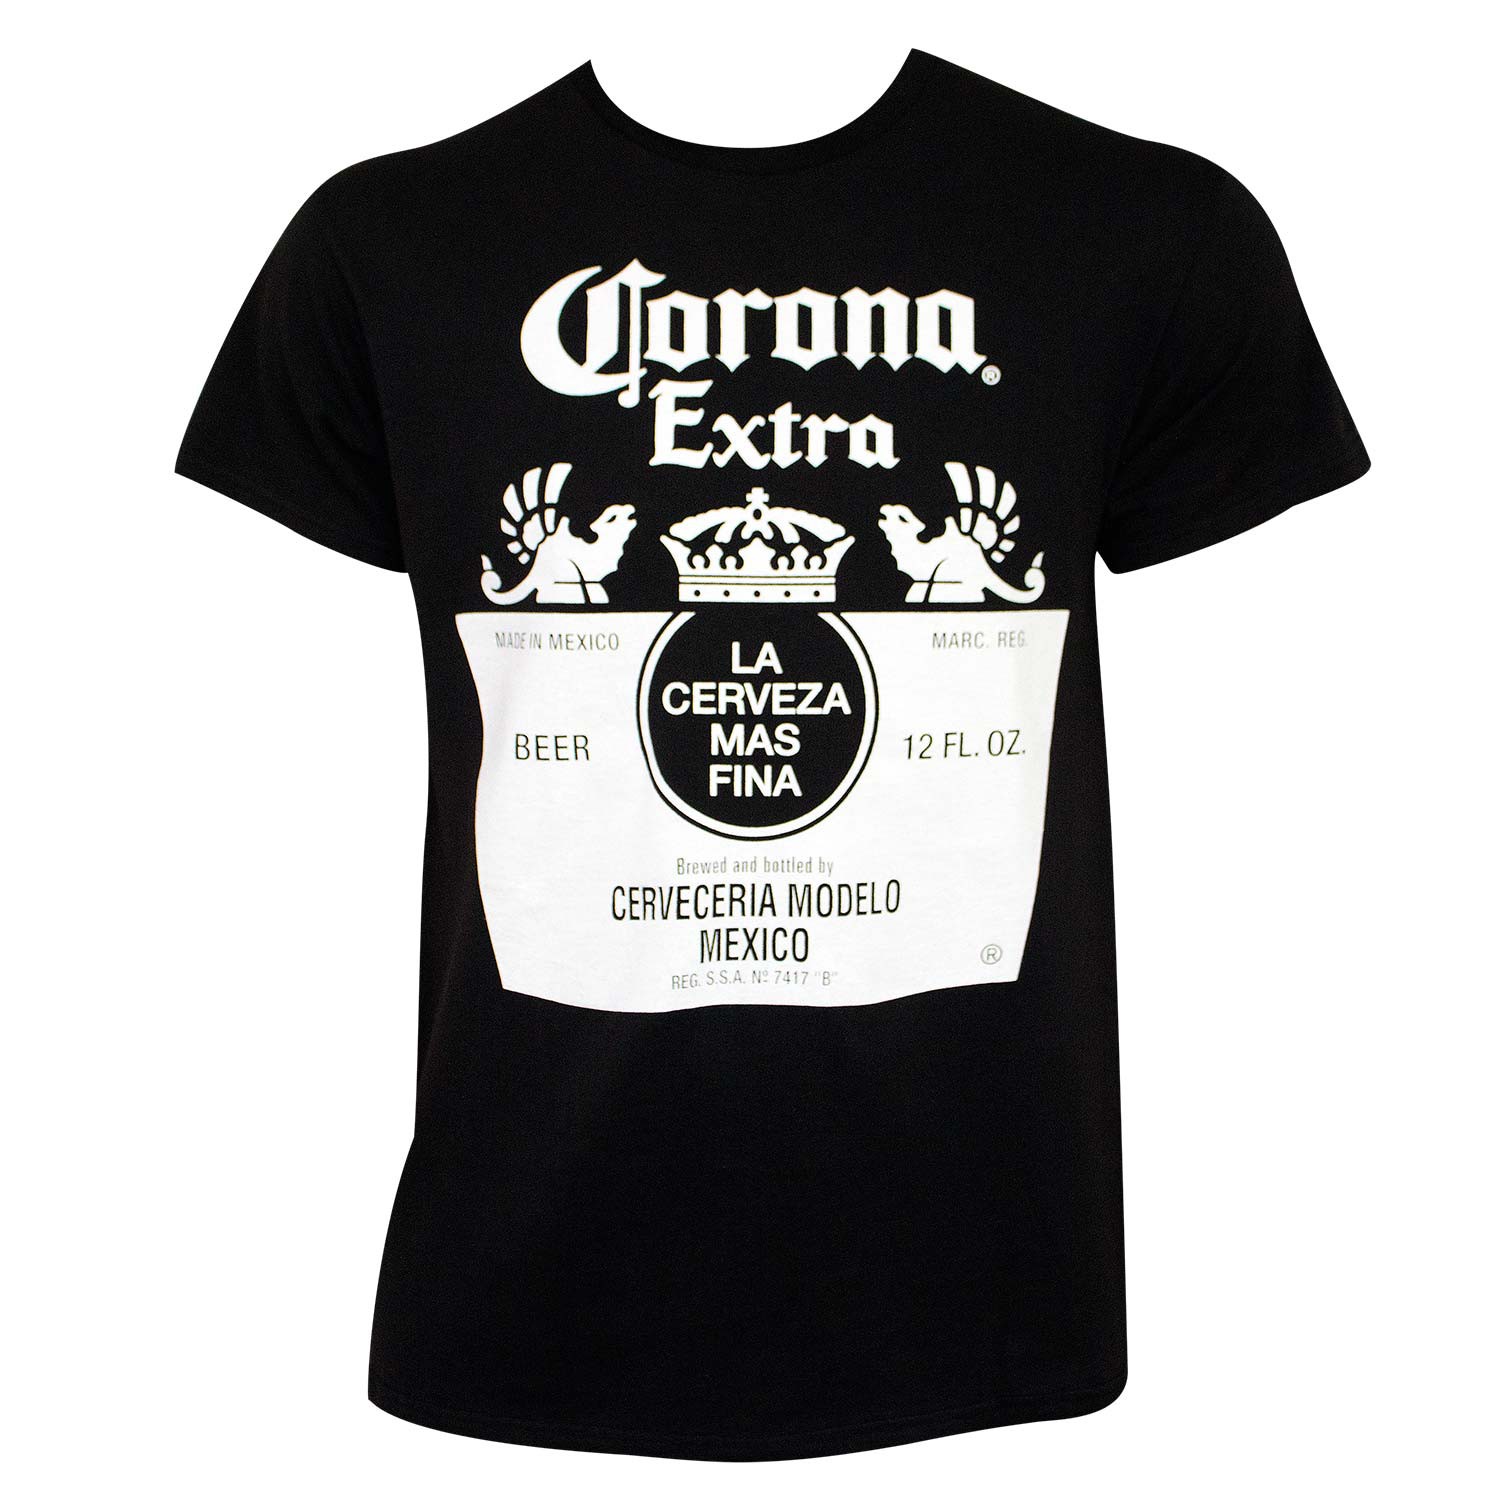 Corona Extra Black & White Bottle Label Tee Shirt